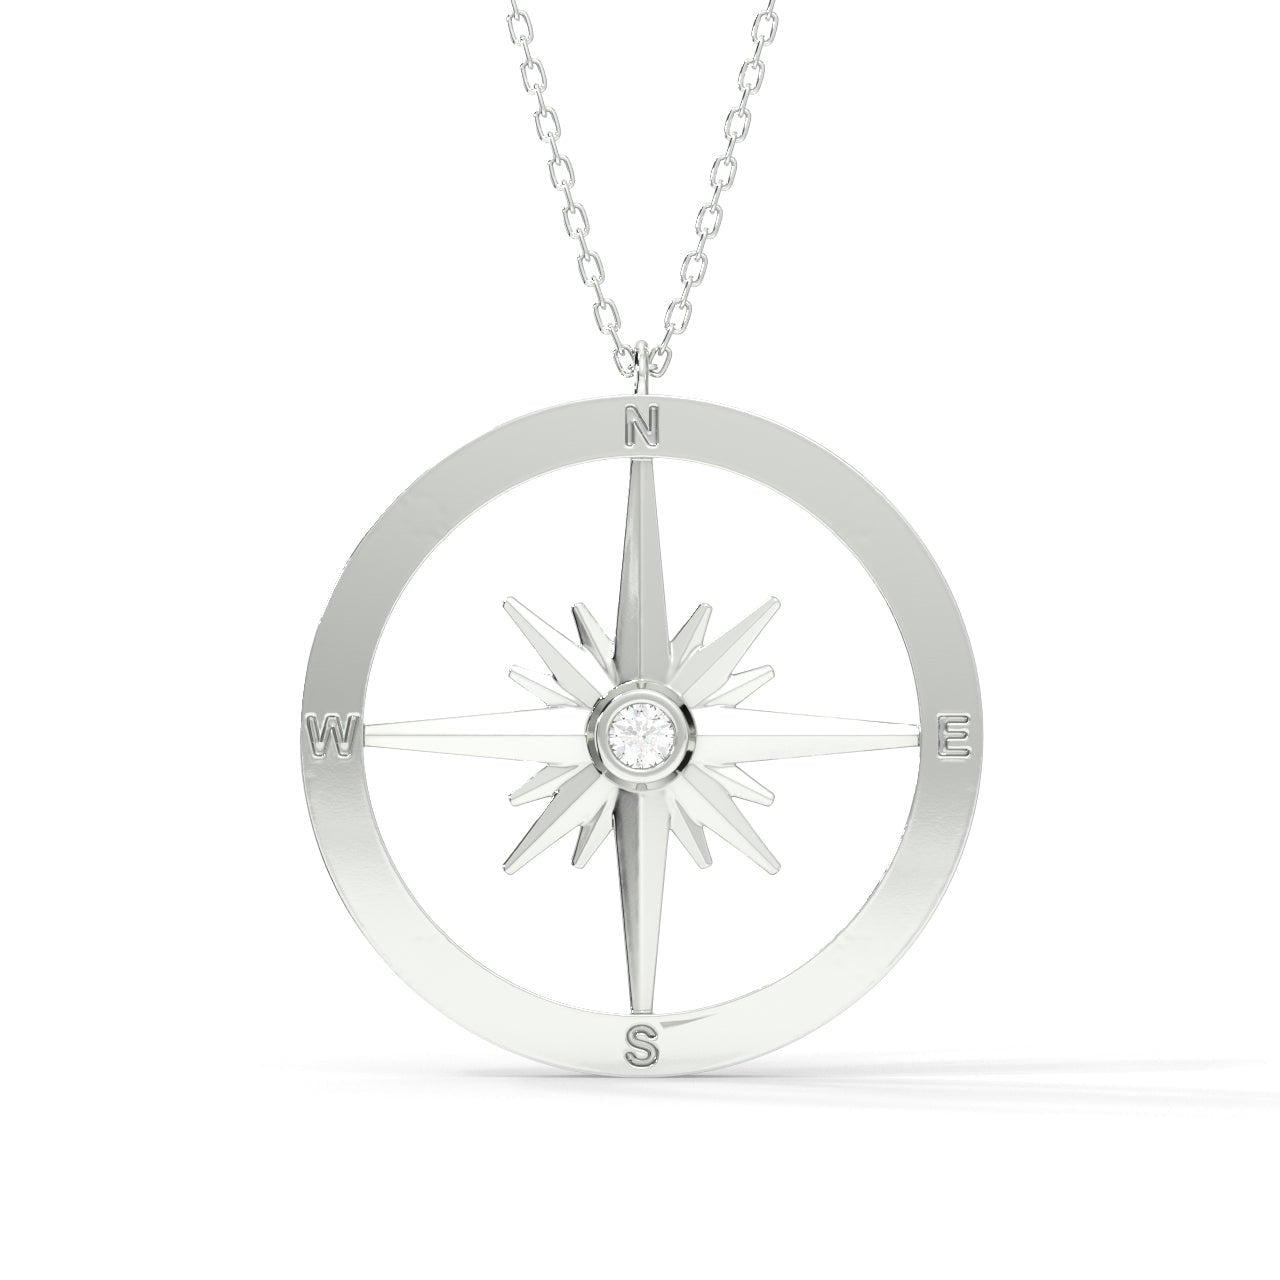 Men's Silver Compass Pendant Necklace - Men's Silver Necklace |  Twistedpendant